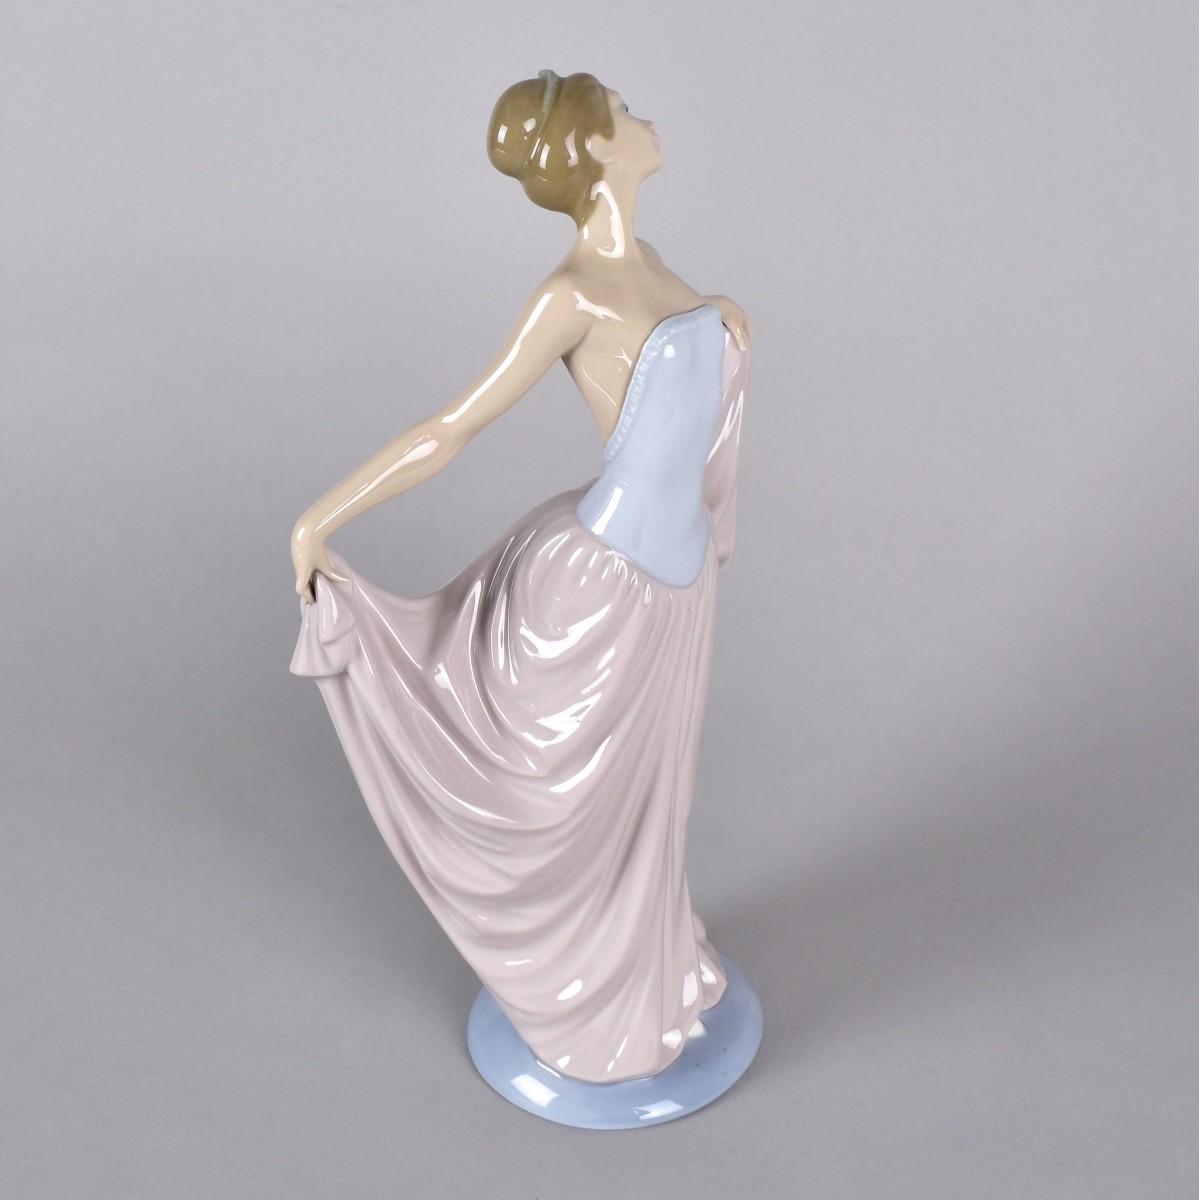 Lladro "Dancer" Figurine